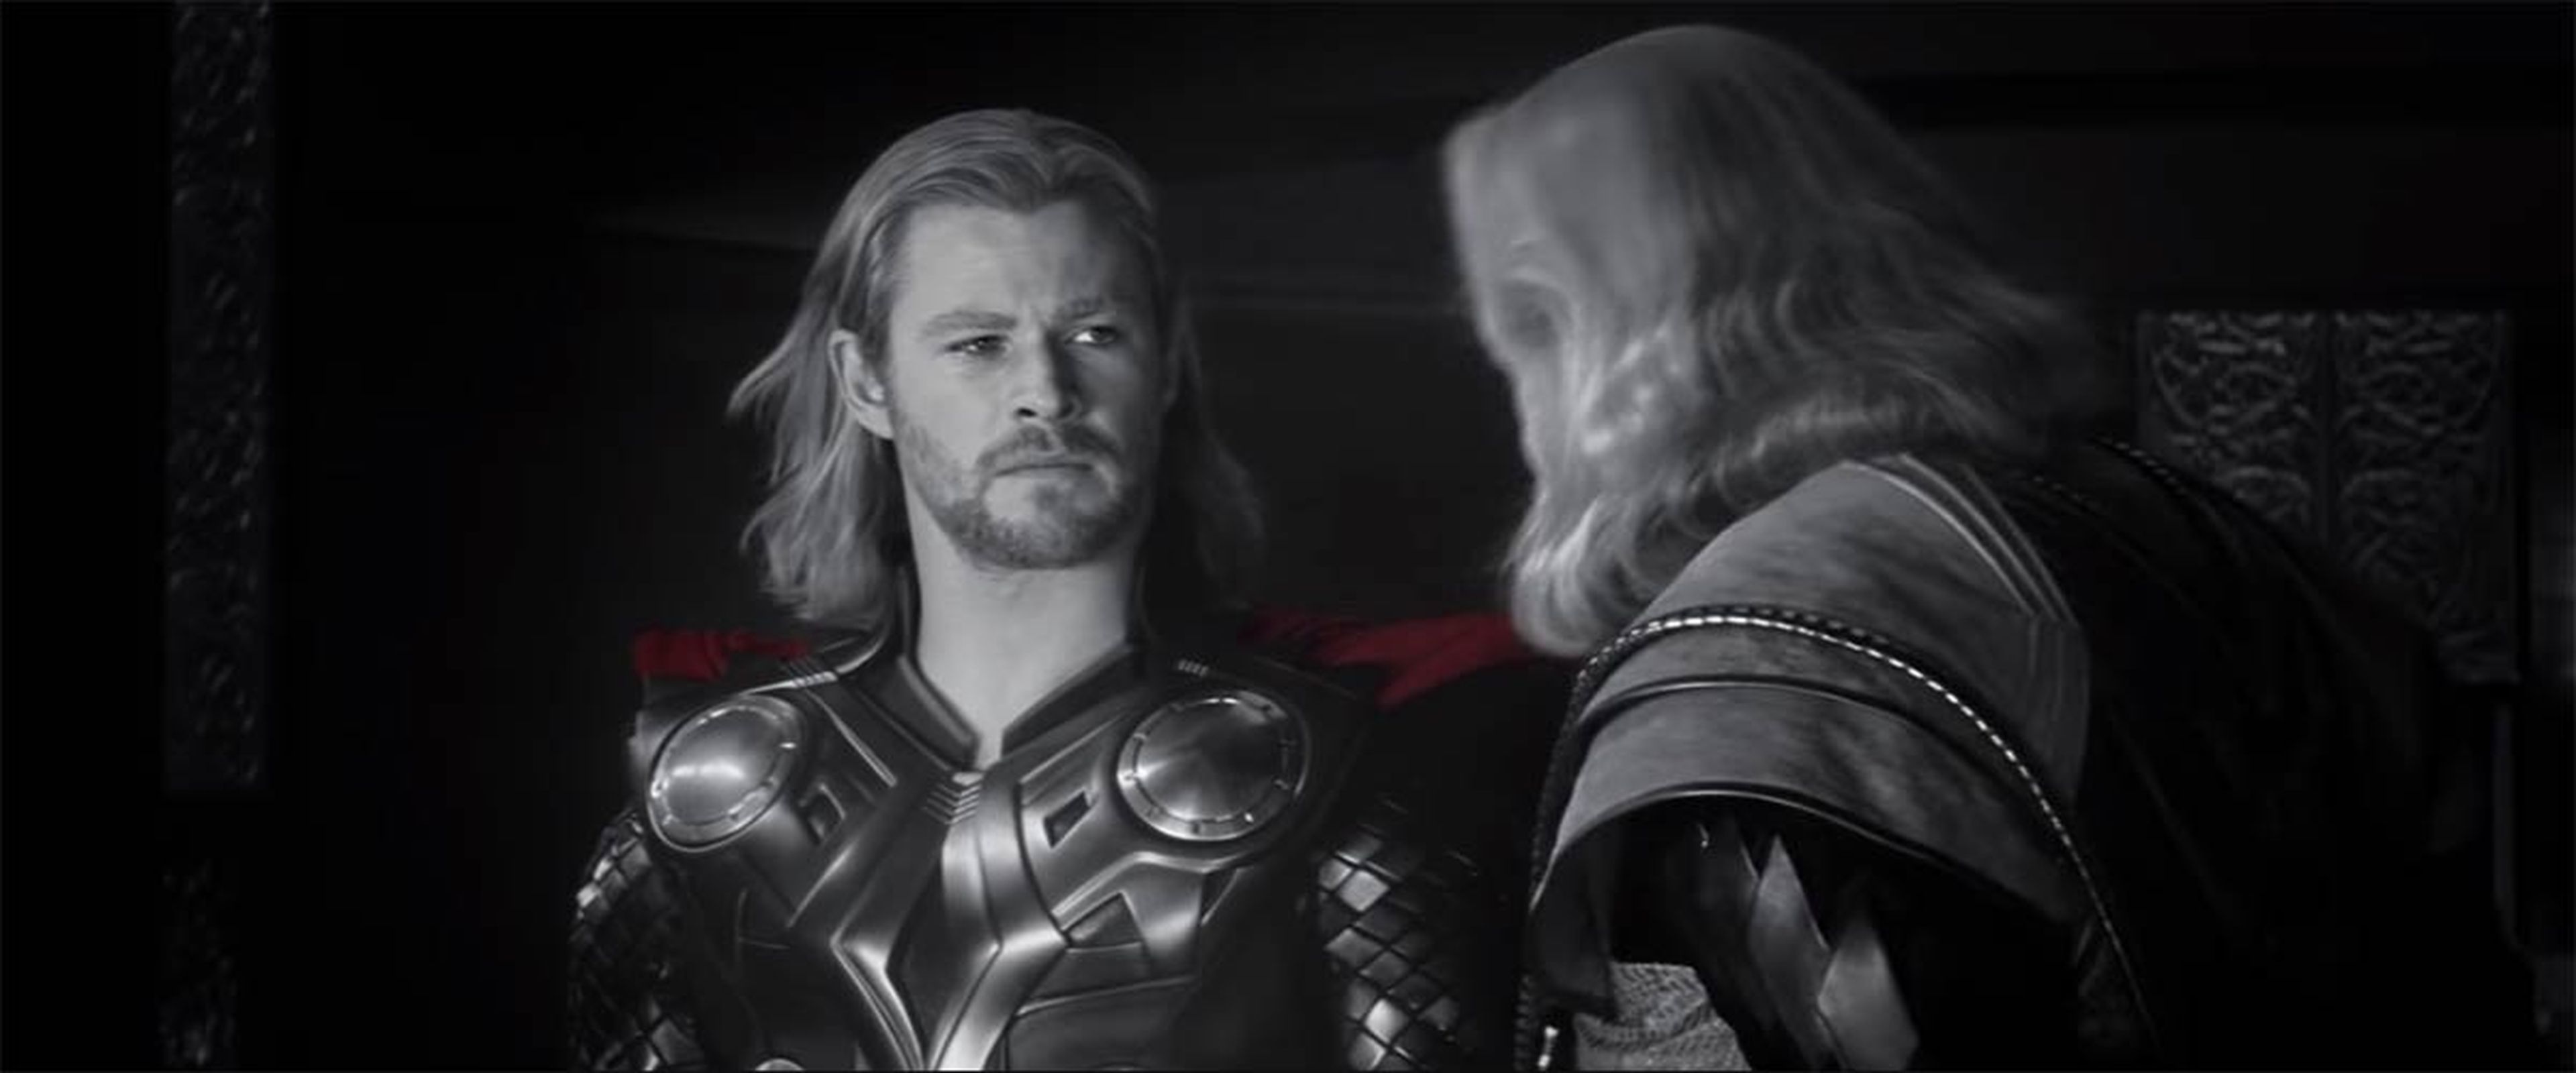 Origen de Thor en Vengadores: Endgame (Trailer)